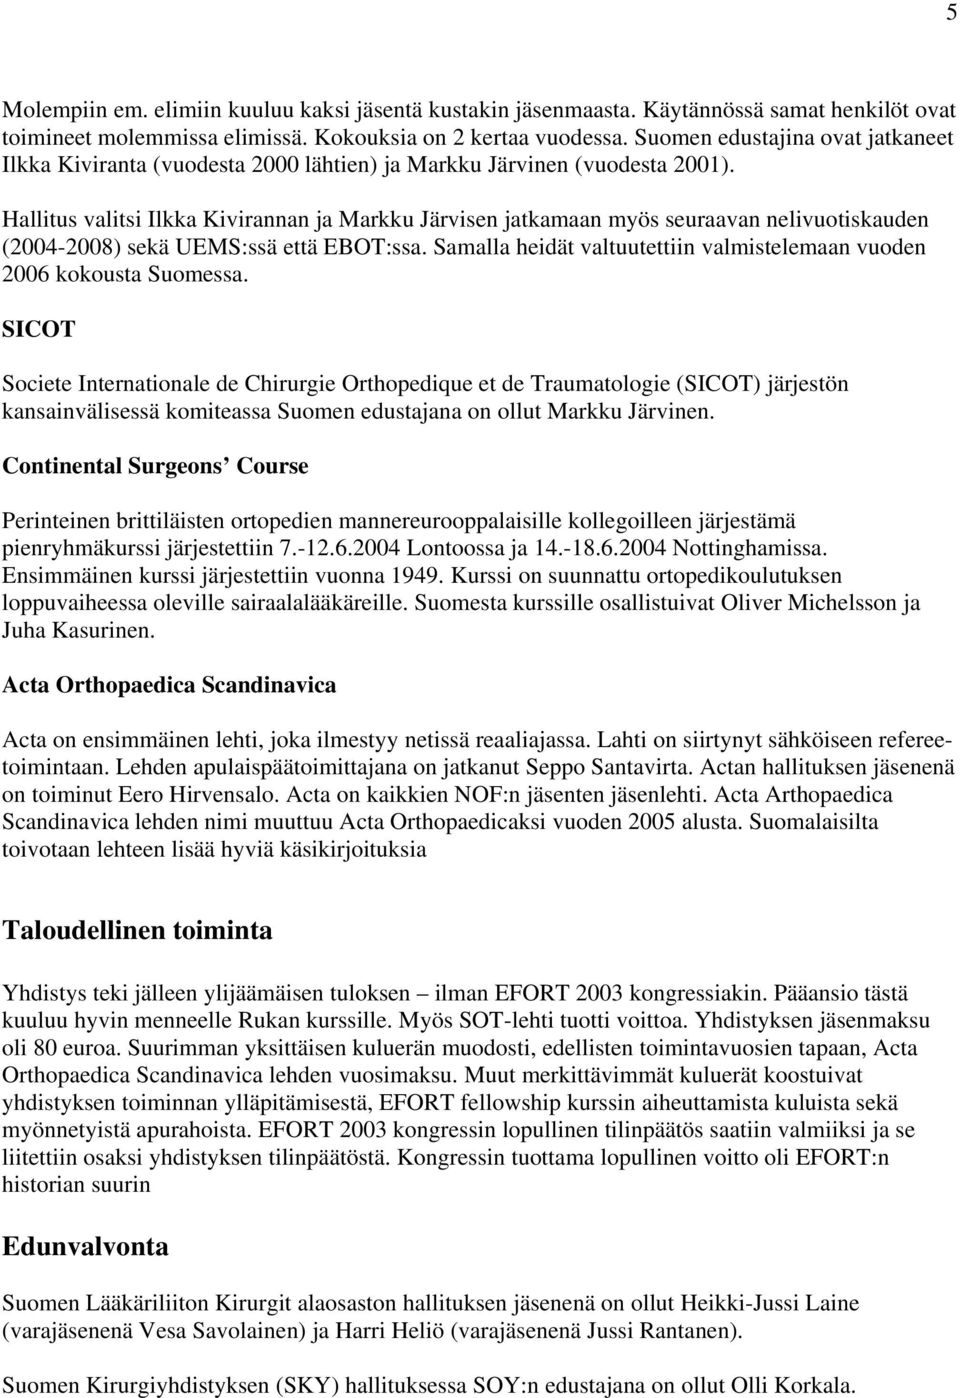 Hallitus valitsi Ilkka Kivirannan ja Markku Järvisen jatkamaan myös seuraavan nelivuotiskauden (2004-2008) sekä UEMS:ssä että EBOT:ssa.